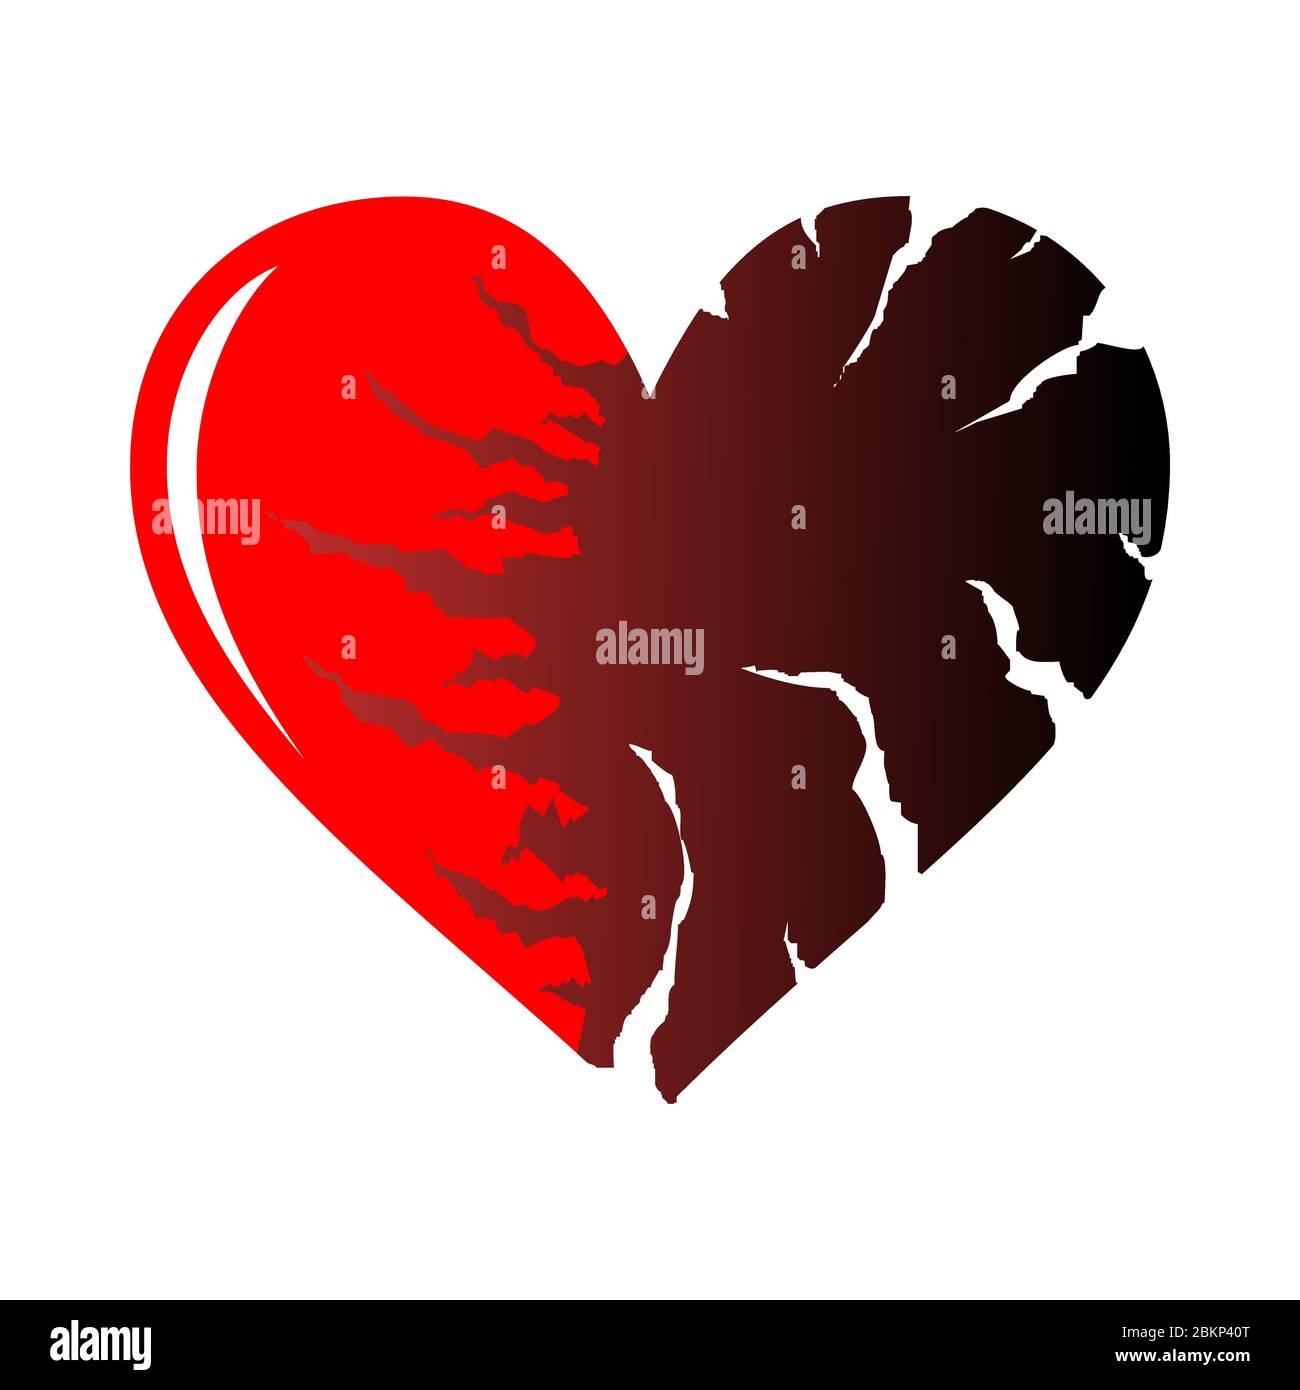 Deux demi-coeurs rouges fissurés icône isolée sur fond blanc. Forme du cœur avec fissures et bords irréguliers. Symbole de l'amour malheureux, expérience émotionnelle Illustration de Vecteur